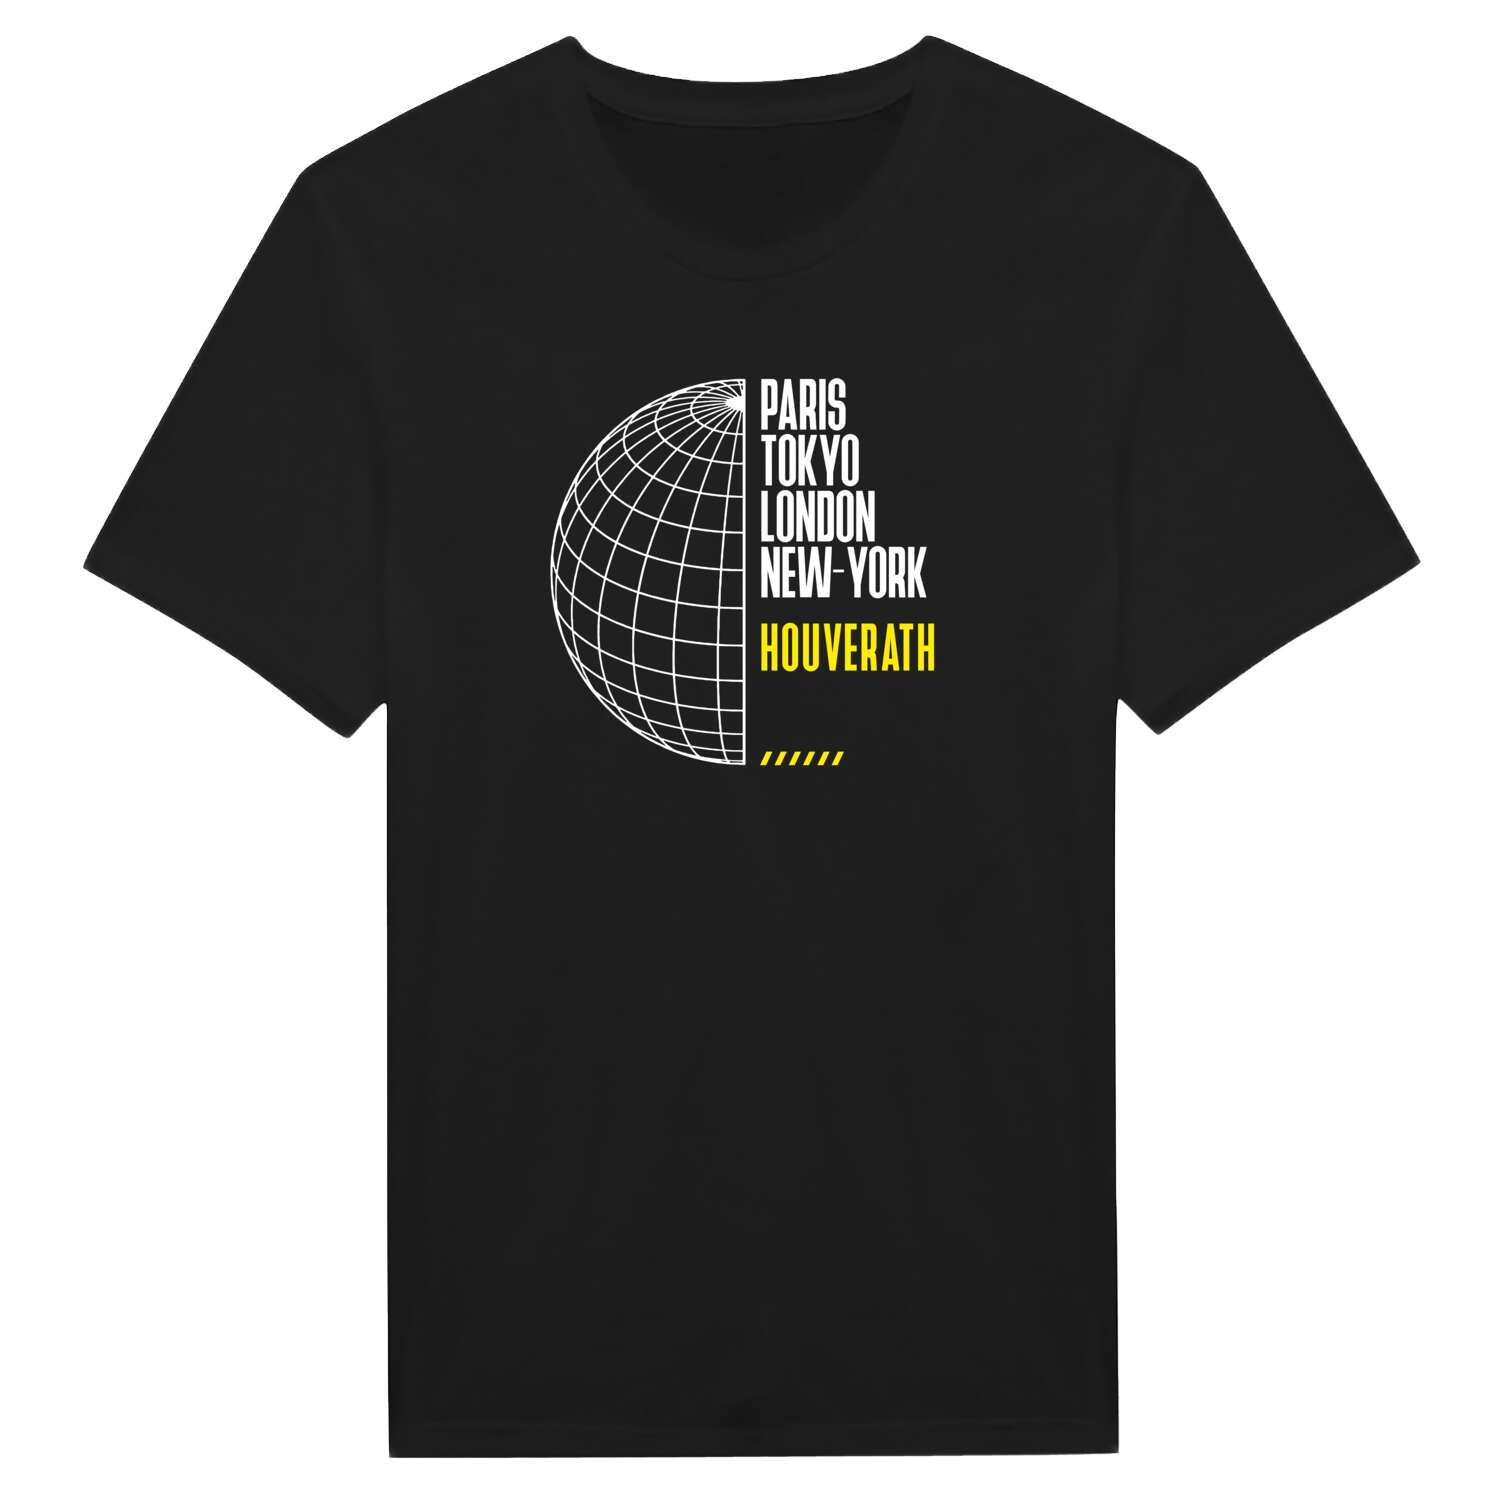 Houverath T-Shirt »Paris Tokyo London«